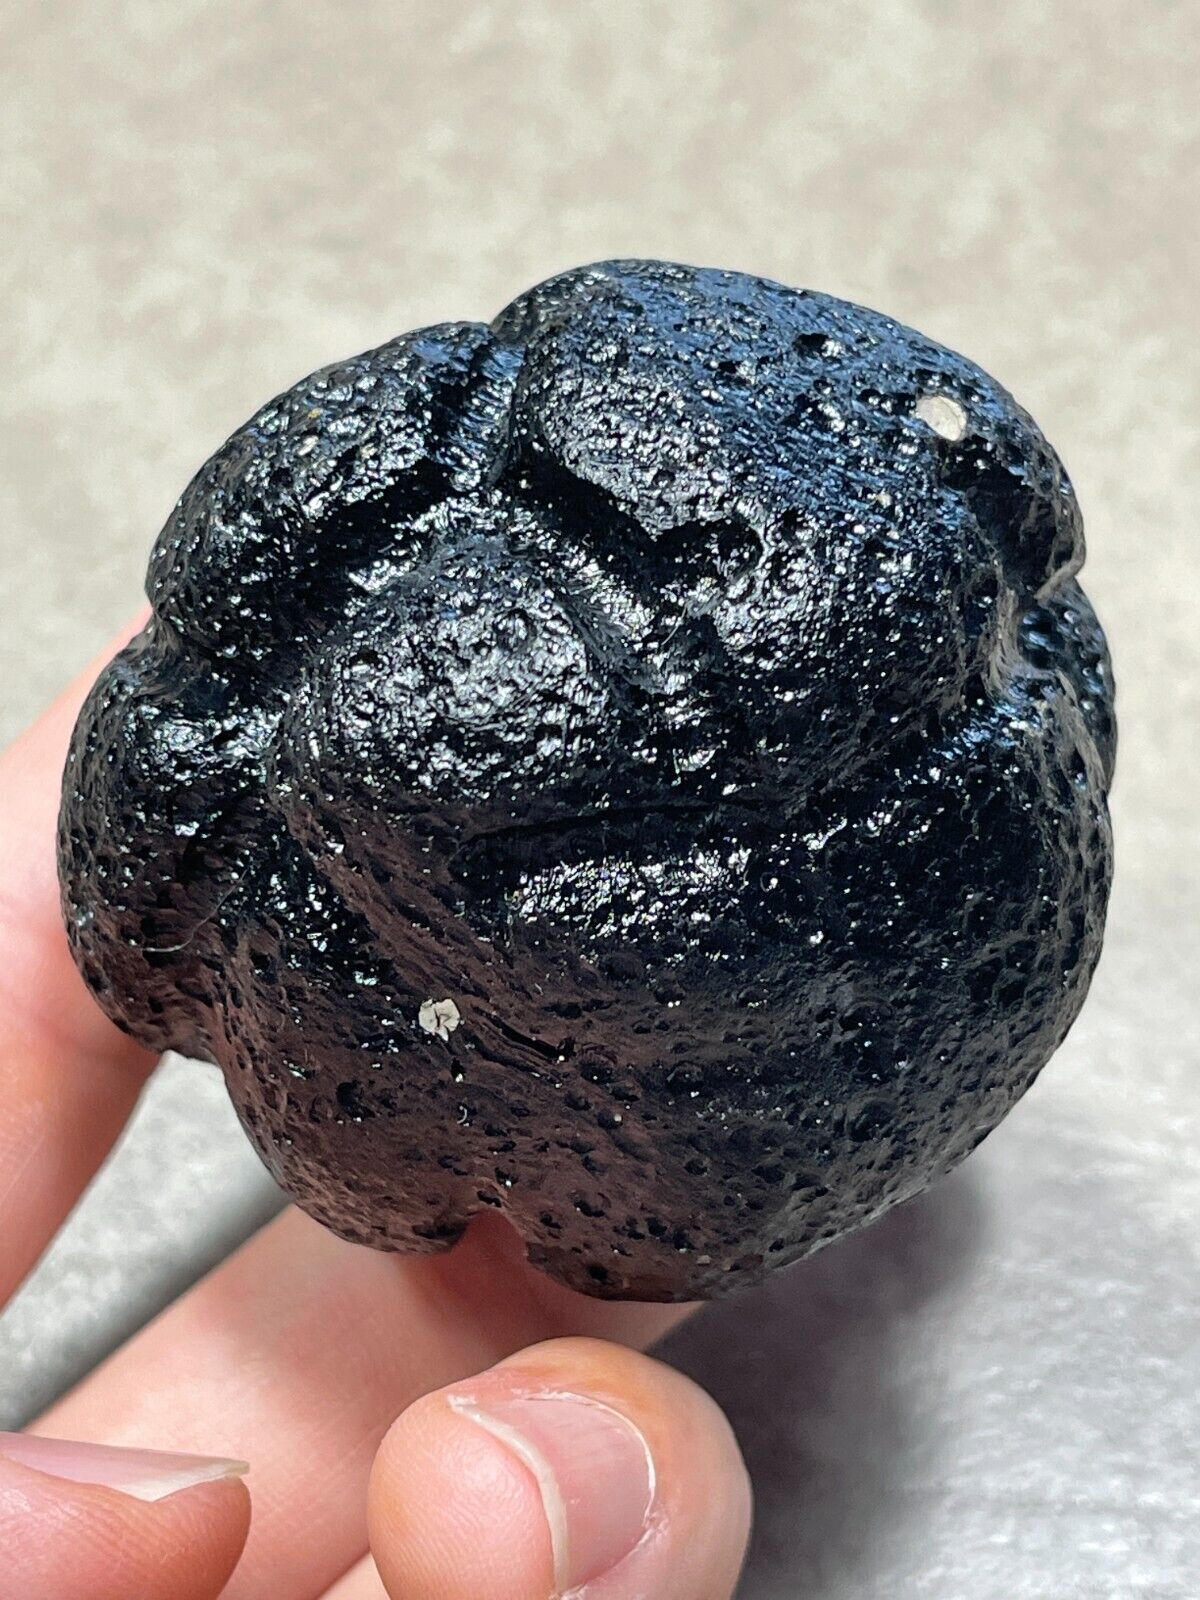 232g BICOLITE PHILIPPINES TEKTITE - Philippinite Rizalite Bicolite Meteorite